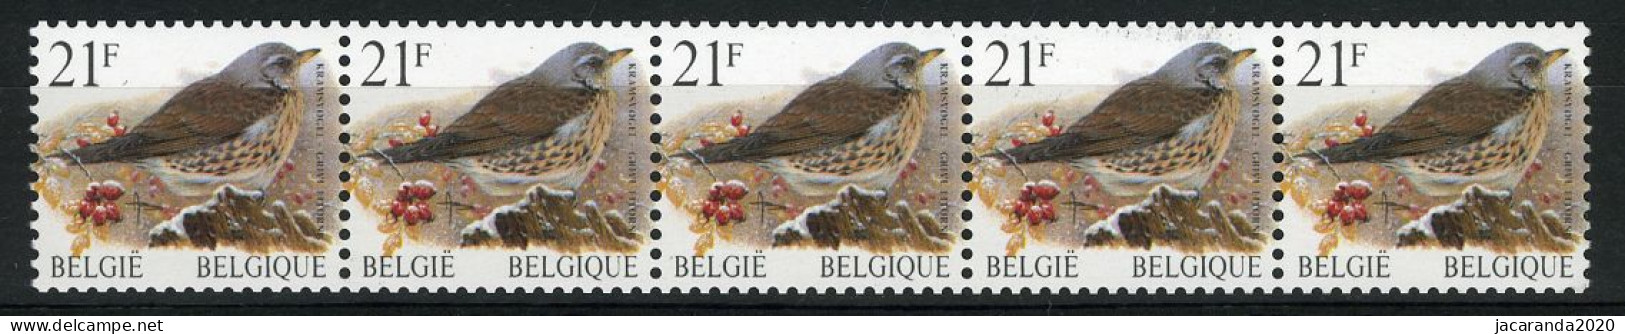 België R89a - Vogels - Oiseaux - Buzin (2792) - 21F - Kramsvogel - Strook Met 4 Cijfers - Bande Avec 4 Chiffres - Rouleaux